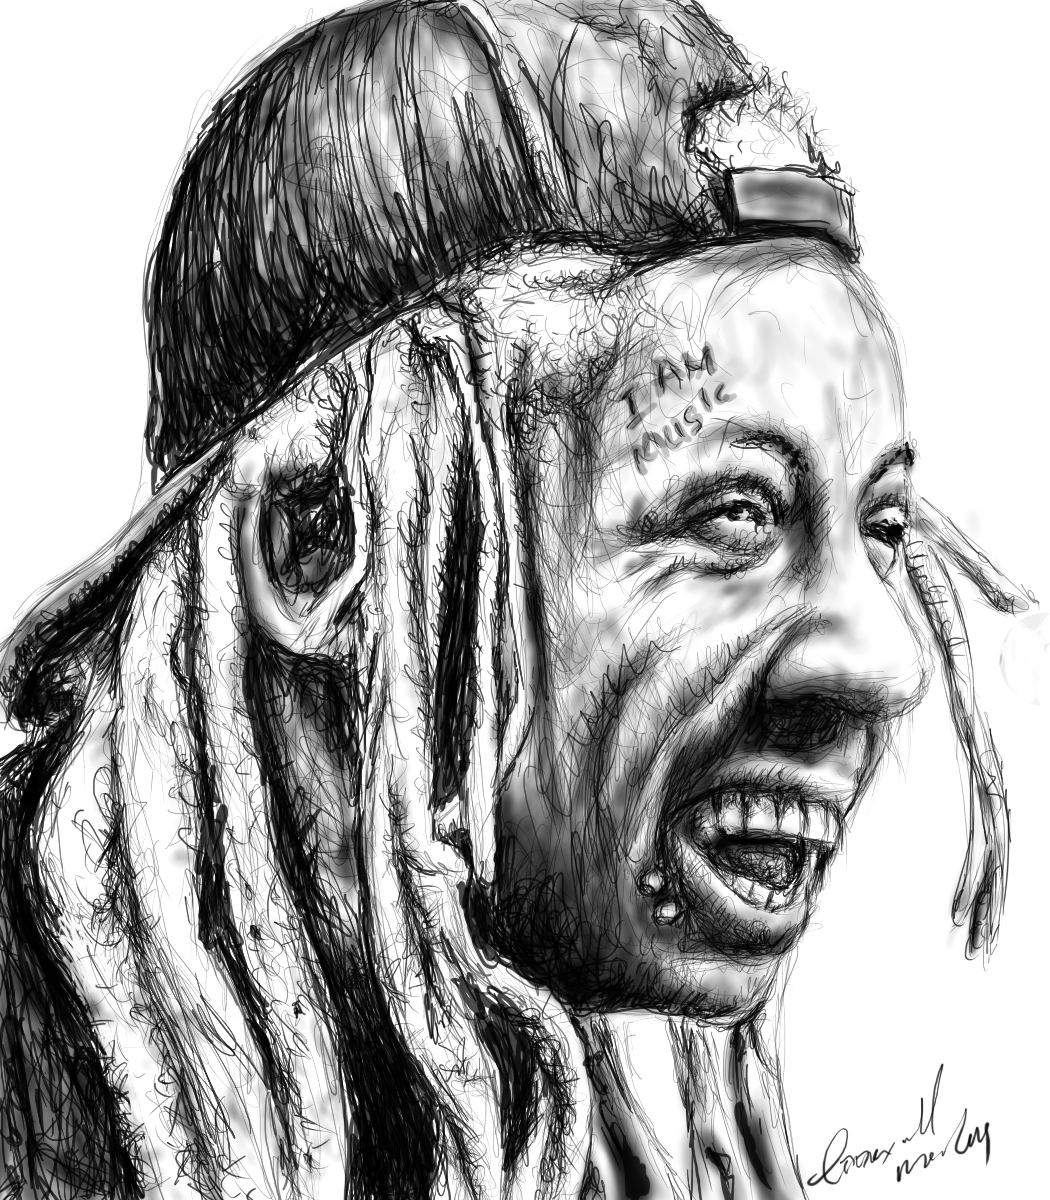 How To Draw Lil Wayne Step By Step